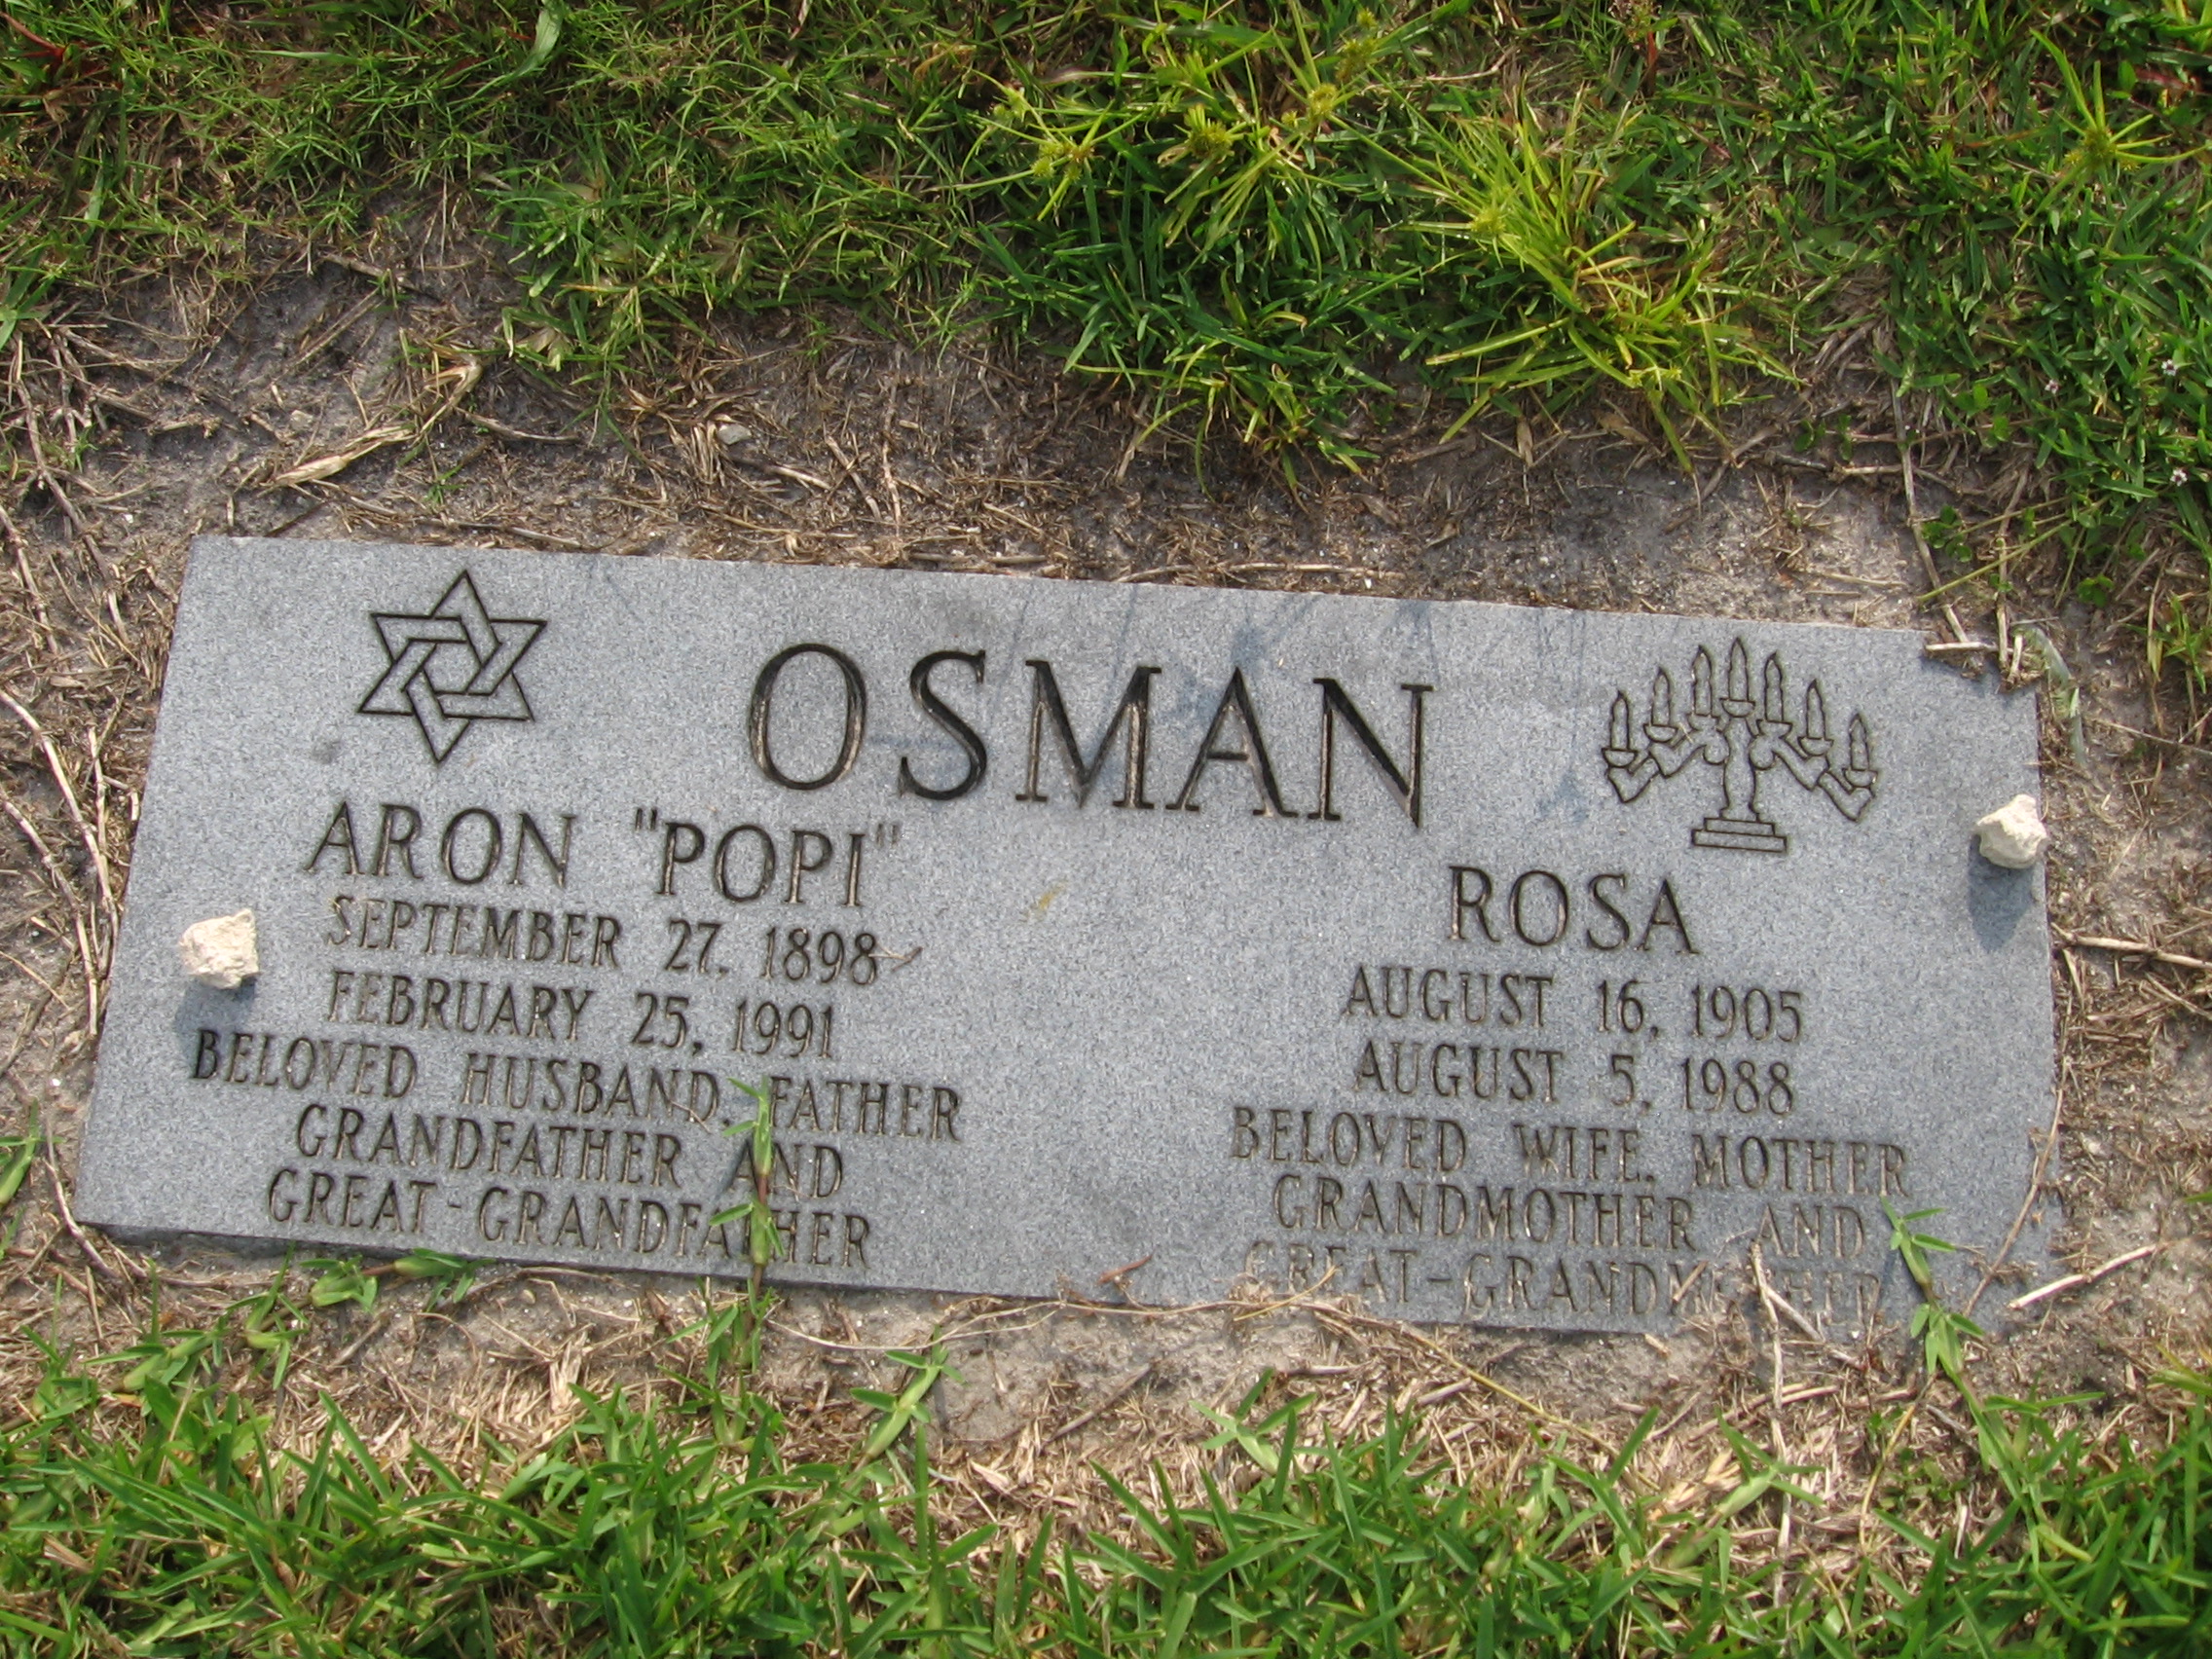 Aron "Popi" Osman